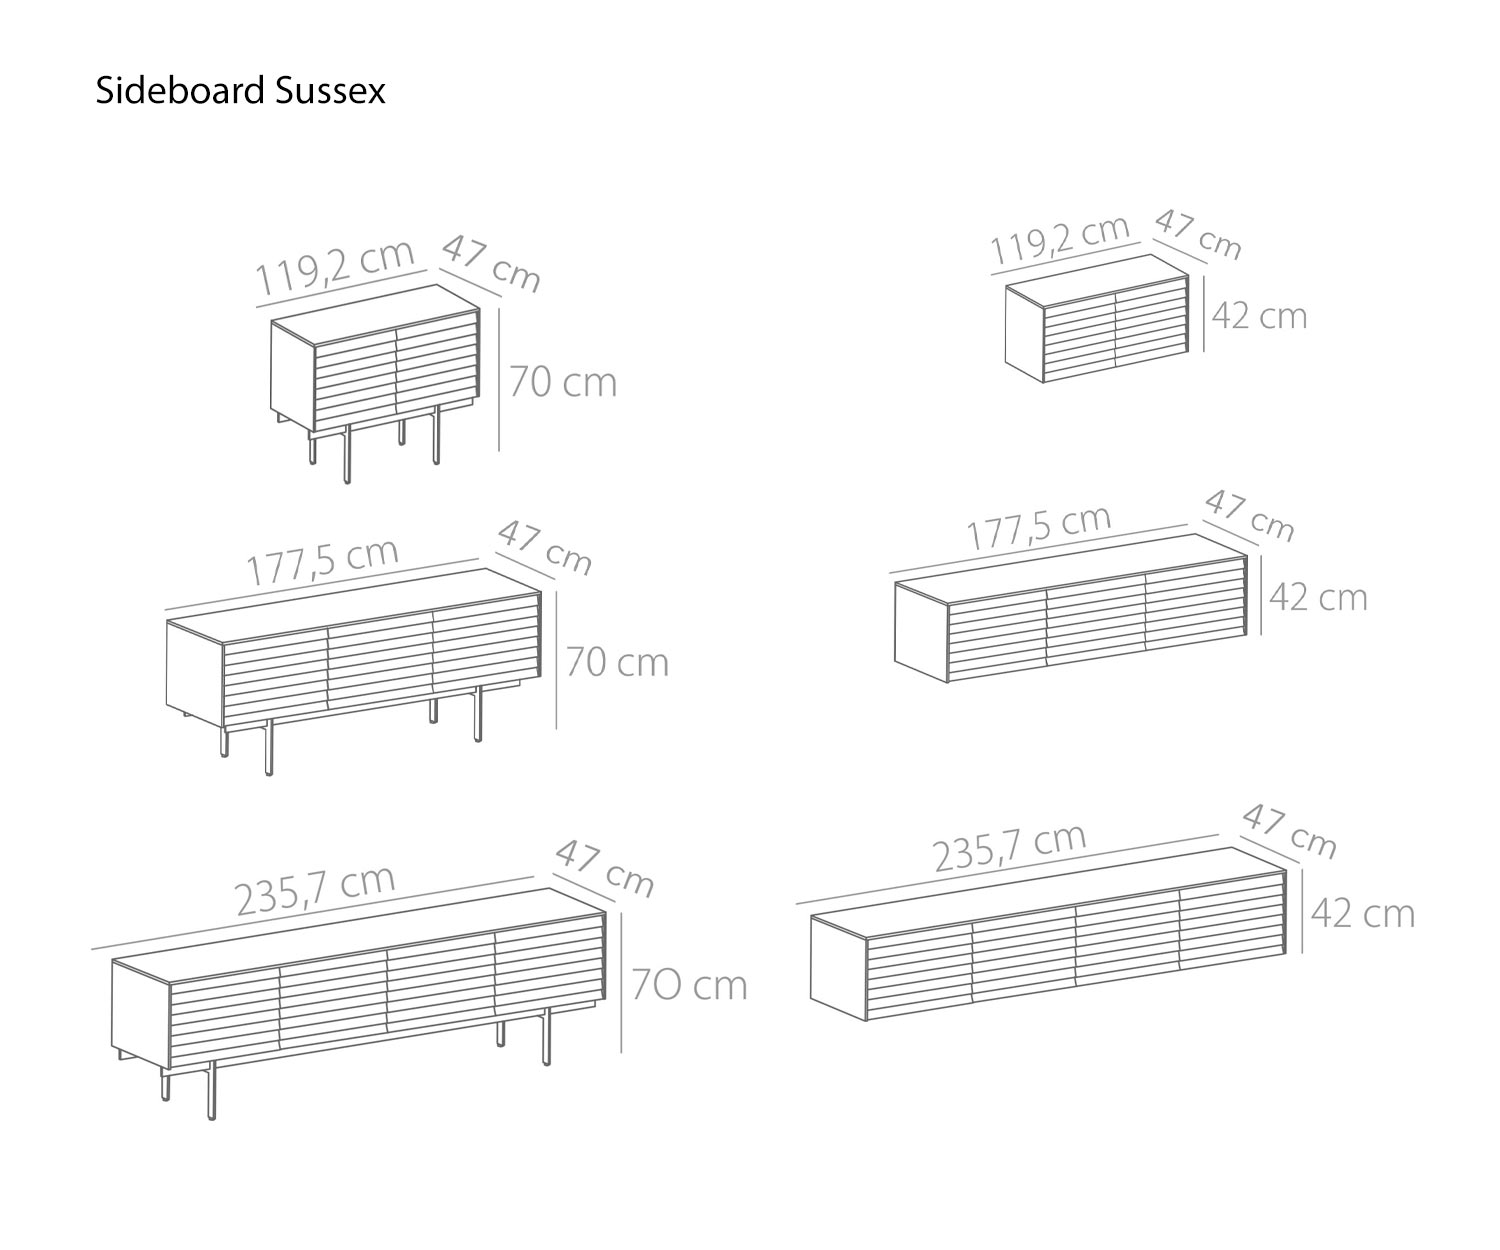 Designer Sideboard Sussex von Punt Breite 119 cm 177 cm 235 cm Skizze Maße Größen